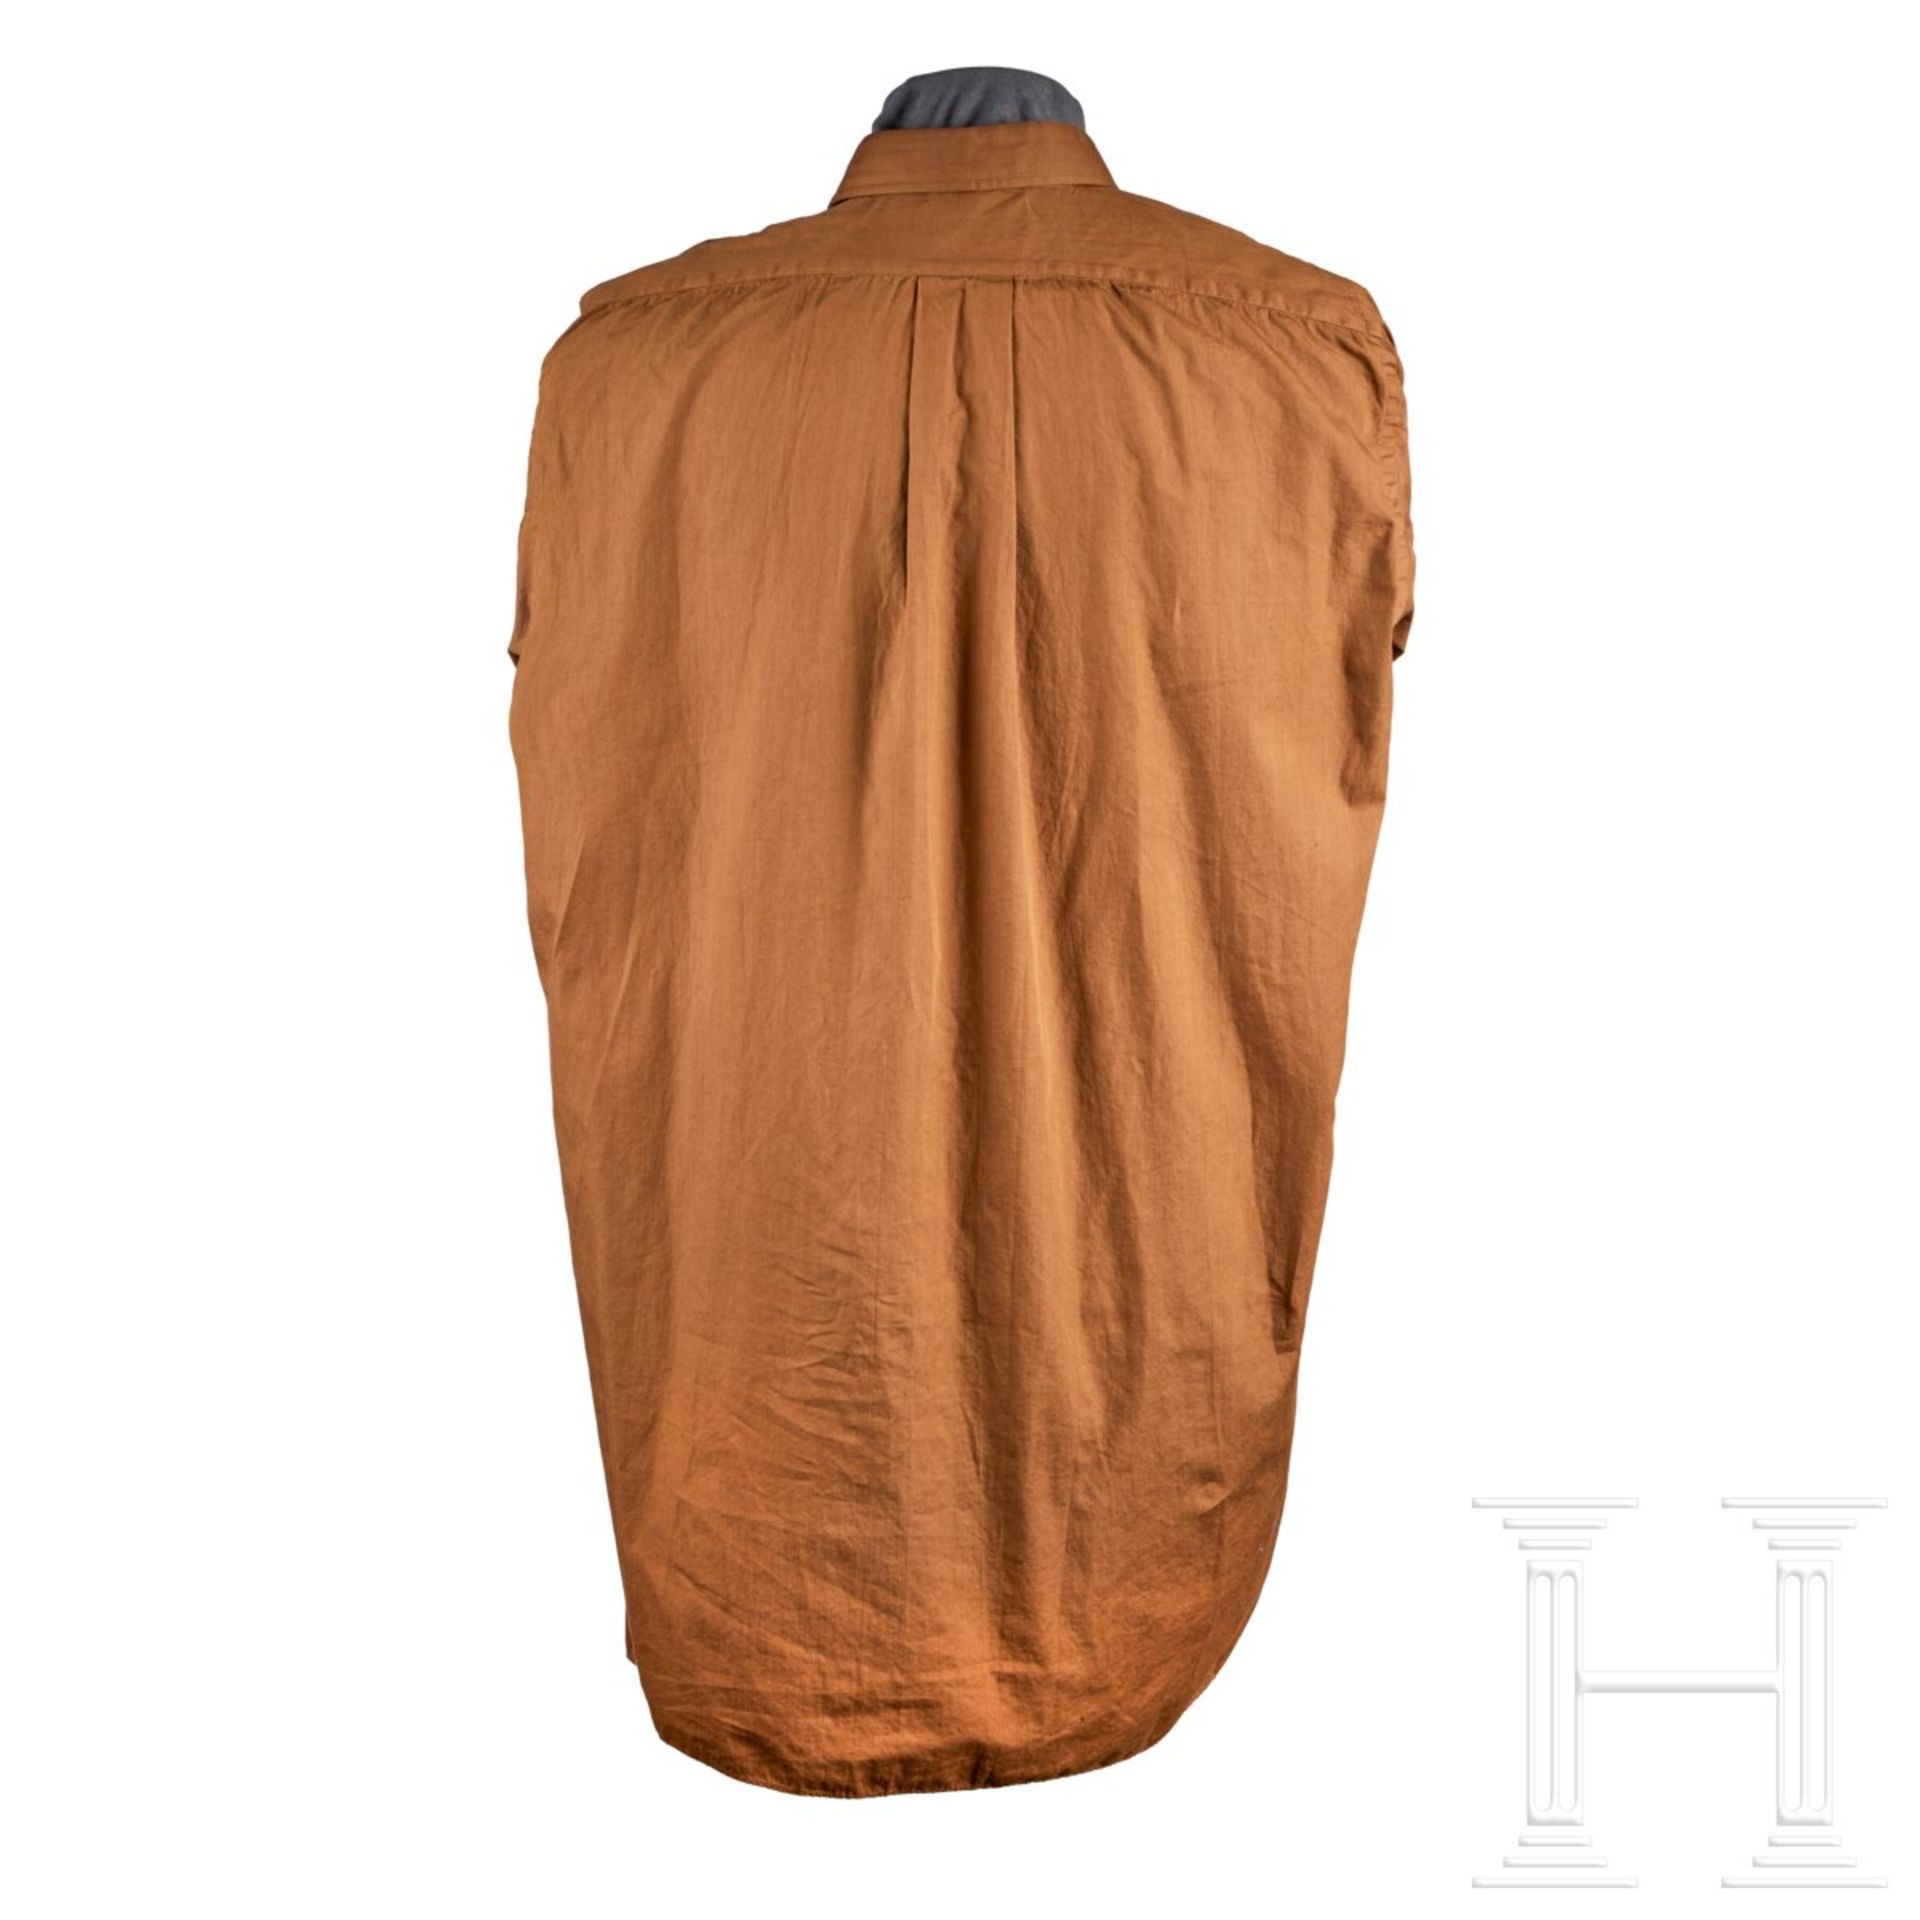 A Brown Uniform Shirt for SS-Verfügungstruppe - Bild 2 aus 2